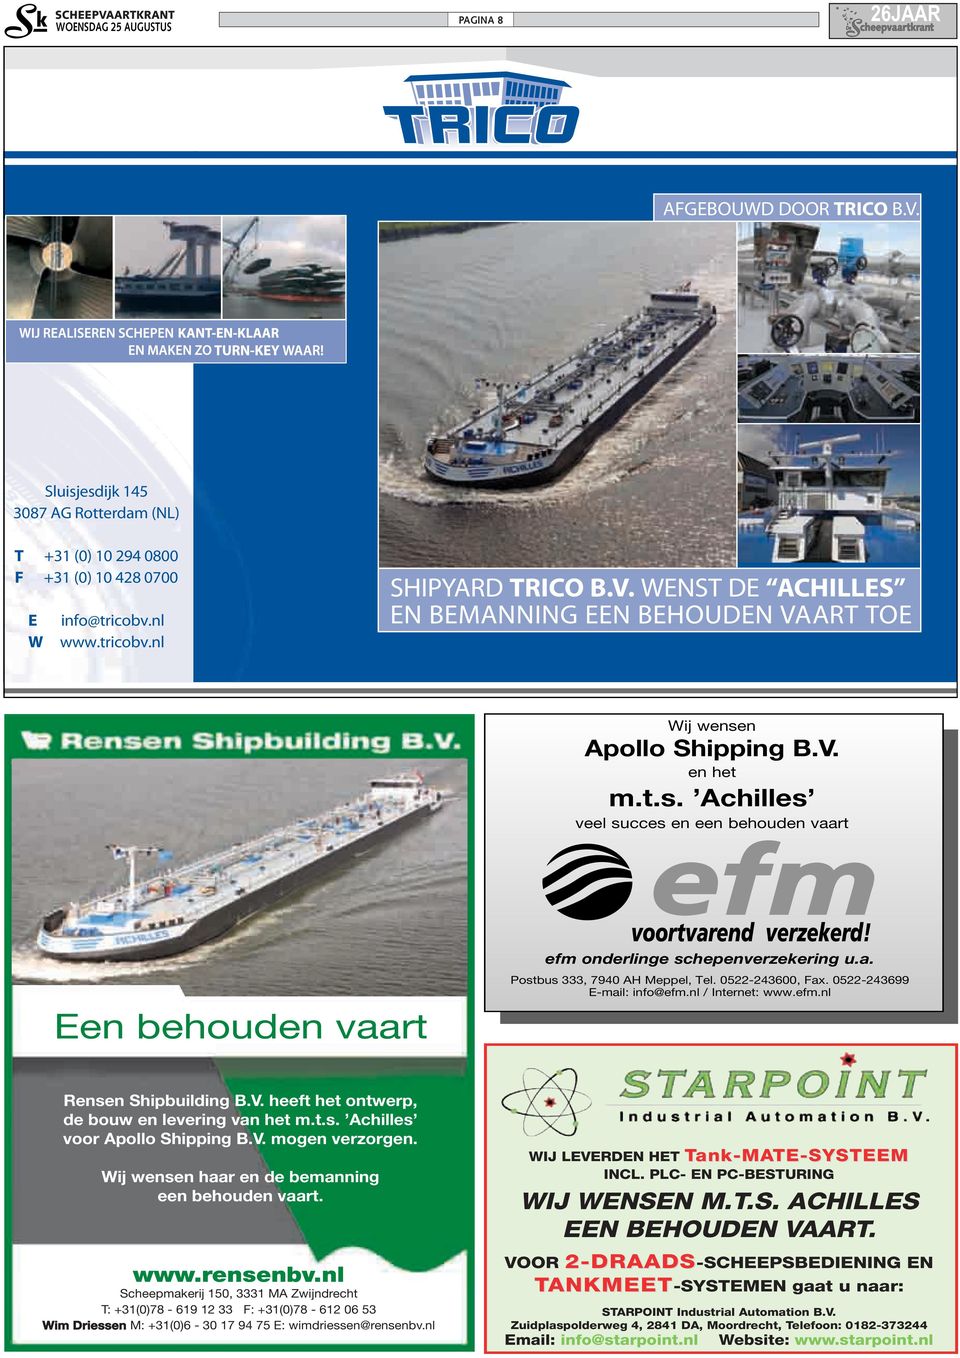 nl / Internet: www.efm.nl Rensen Shipbuilding B.V. heeft het ontwerp, de bouw en levering van het m.t.s. Achilles voor Apollo Shipping B.V. mogen verzorgen.